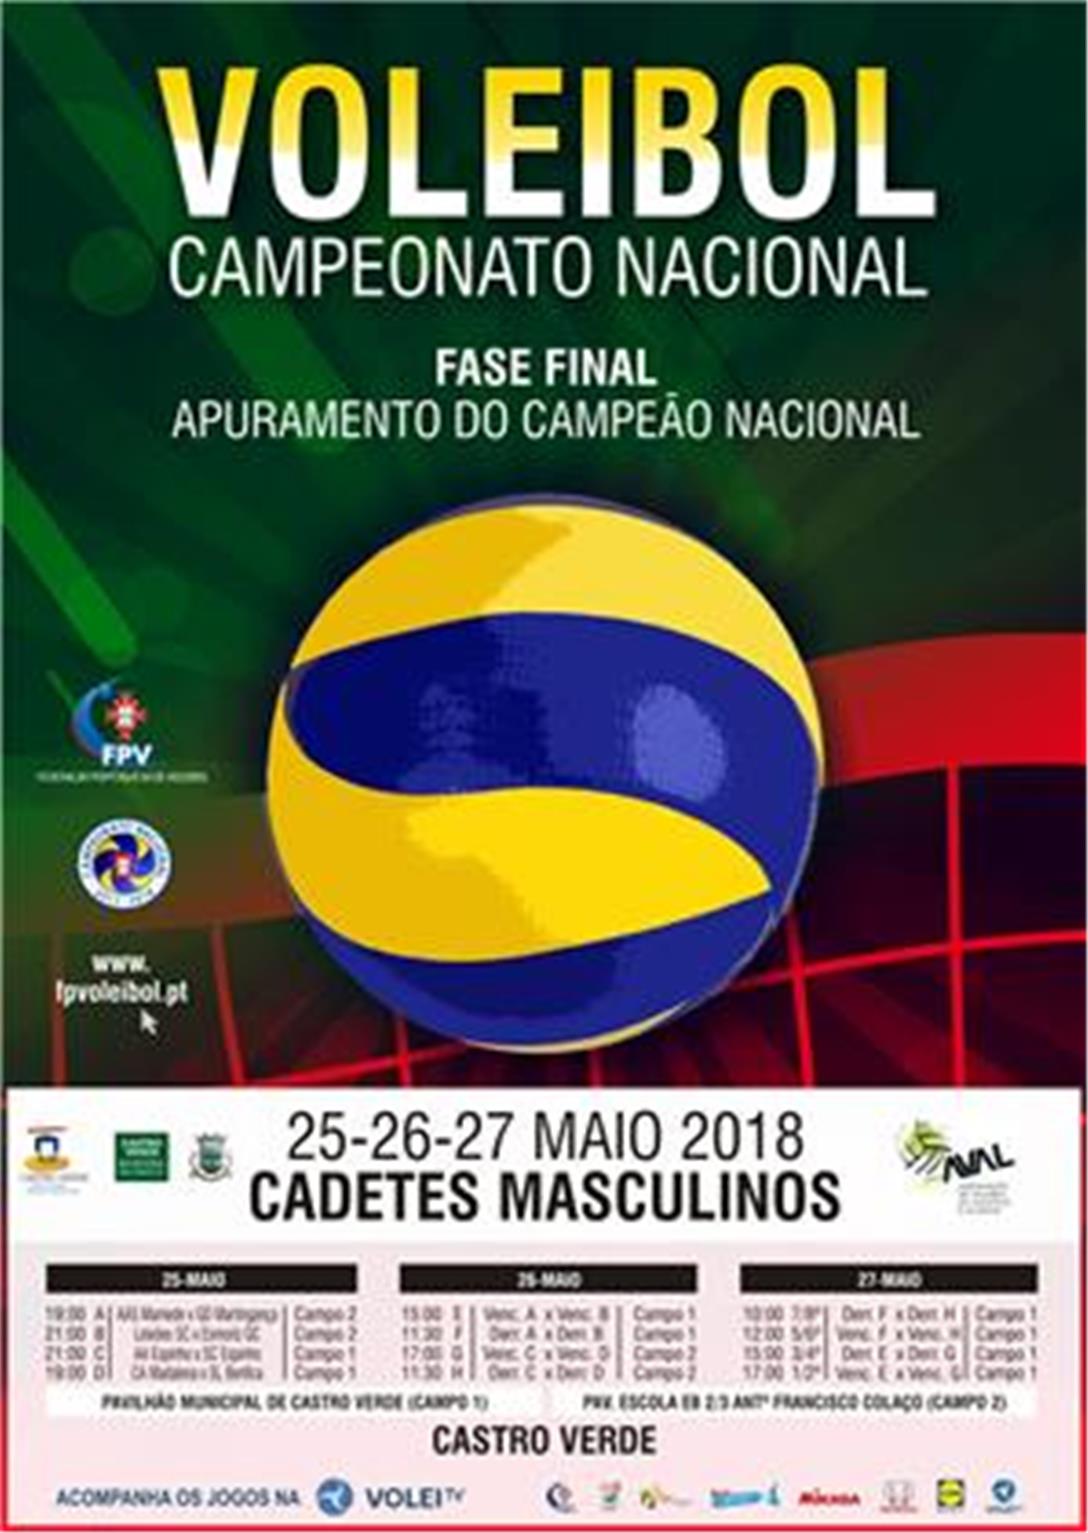 Cadetes Masculinos: Fase Final do Campeonato Nacional de Voleibol disputa-se em Castro Verde